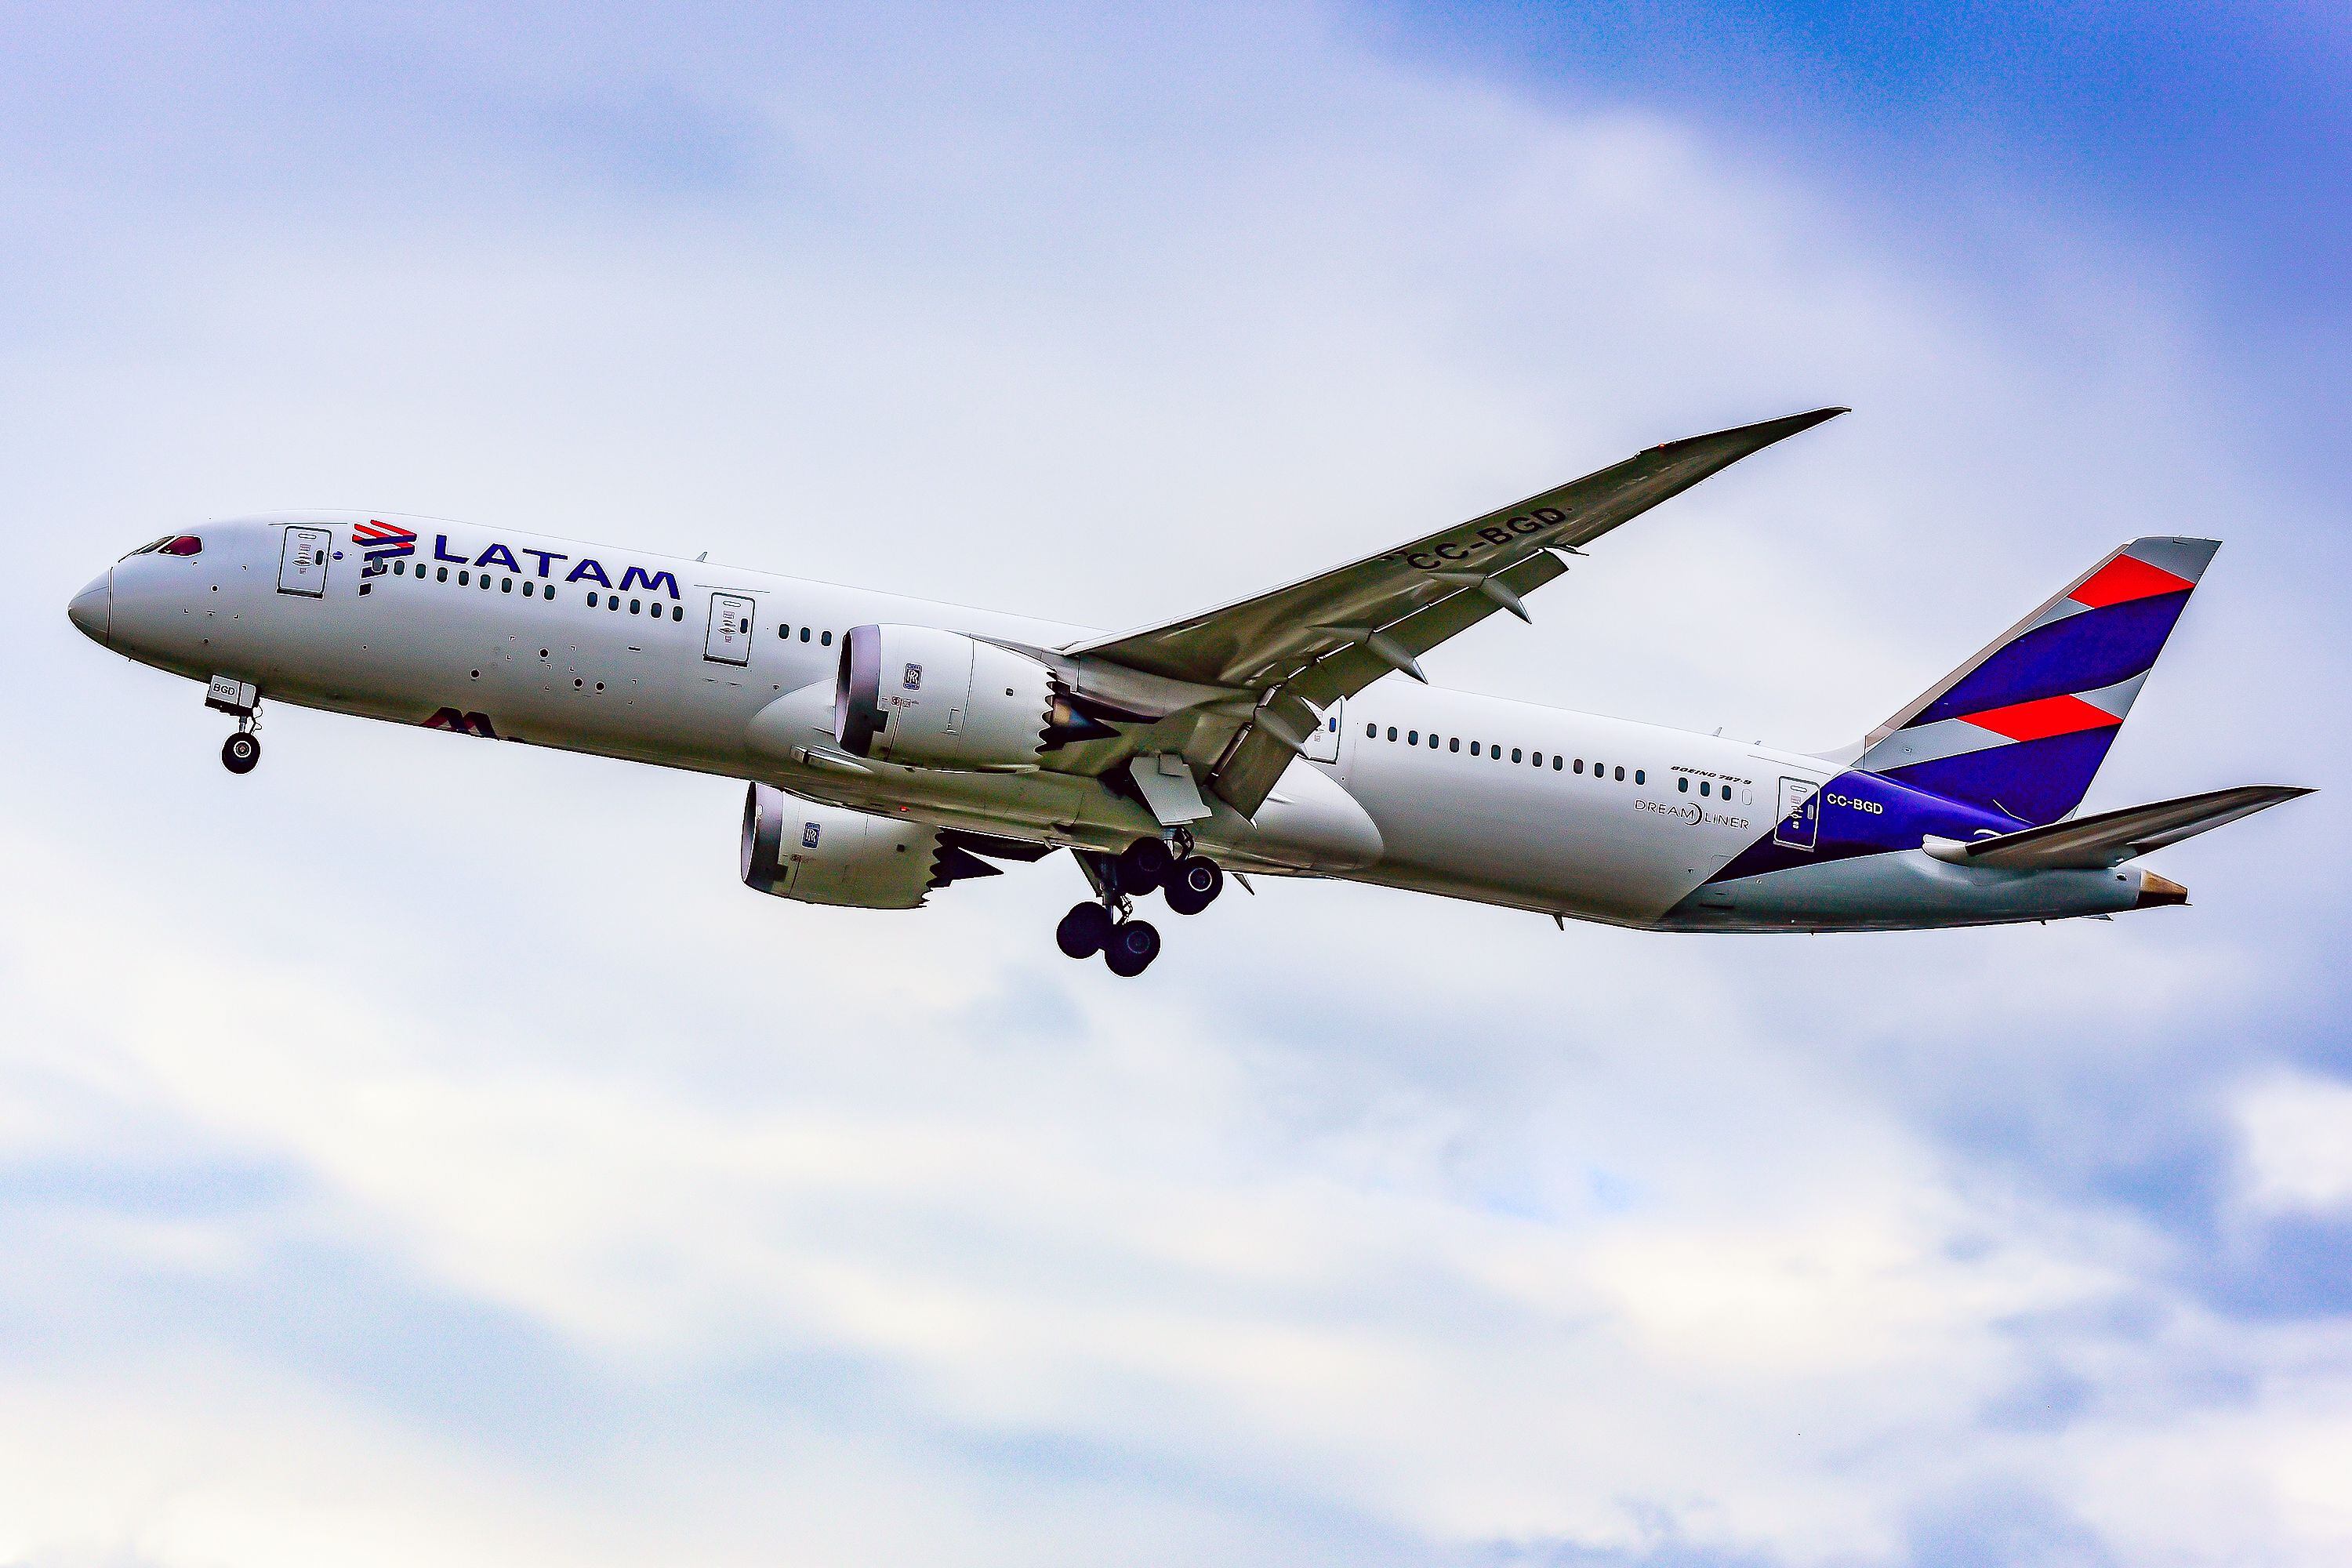 Imagen referencial de un avión de Latam Airlines en pleno vuelo | Foto: Shutterstock)